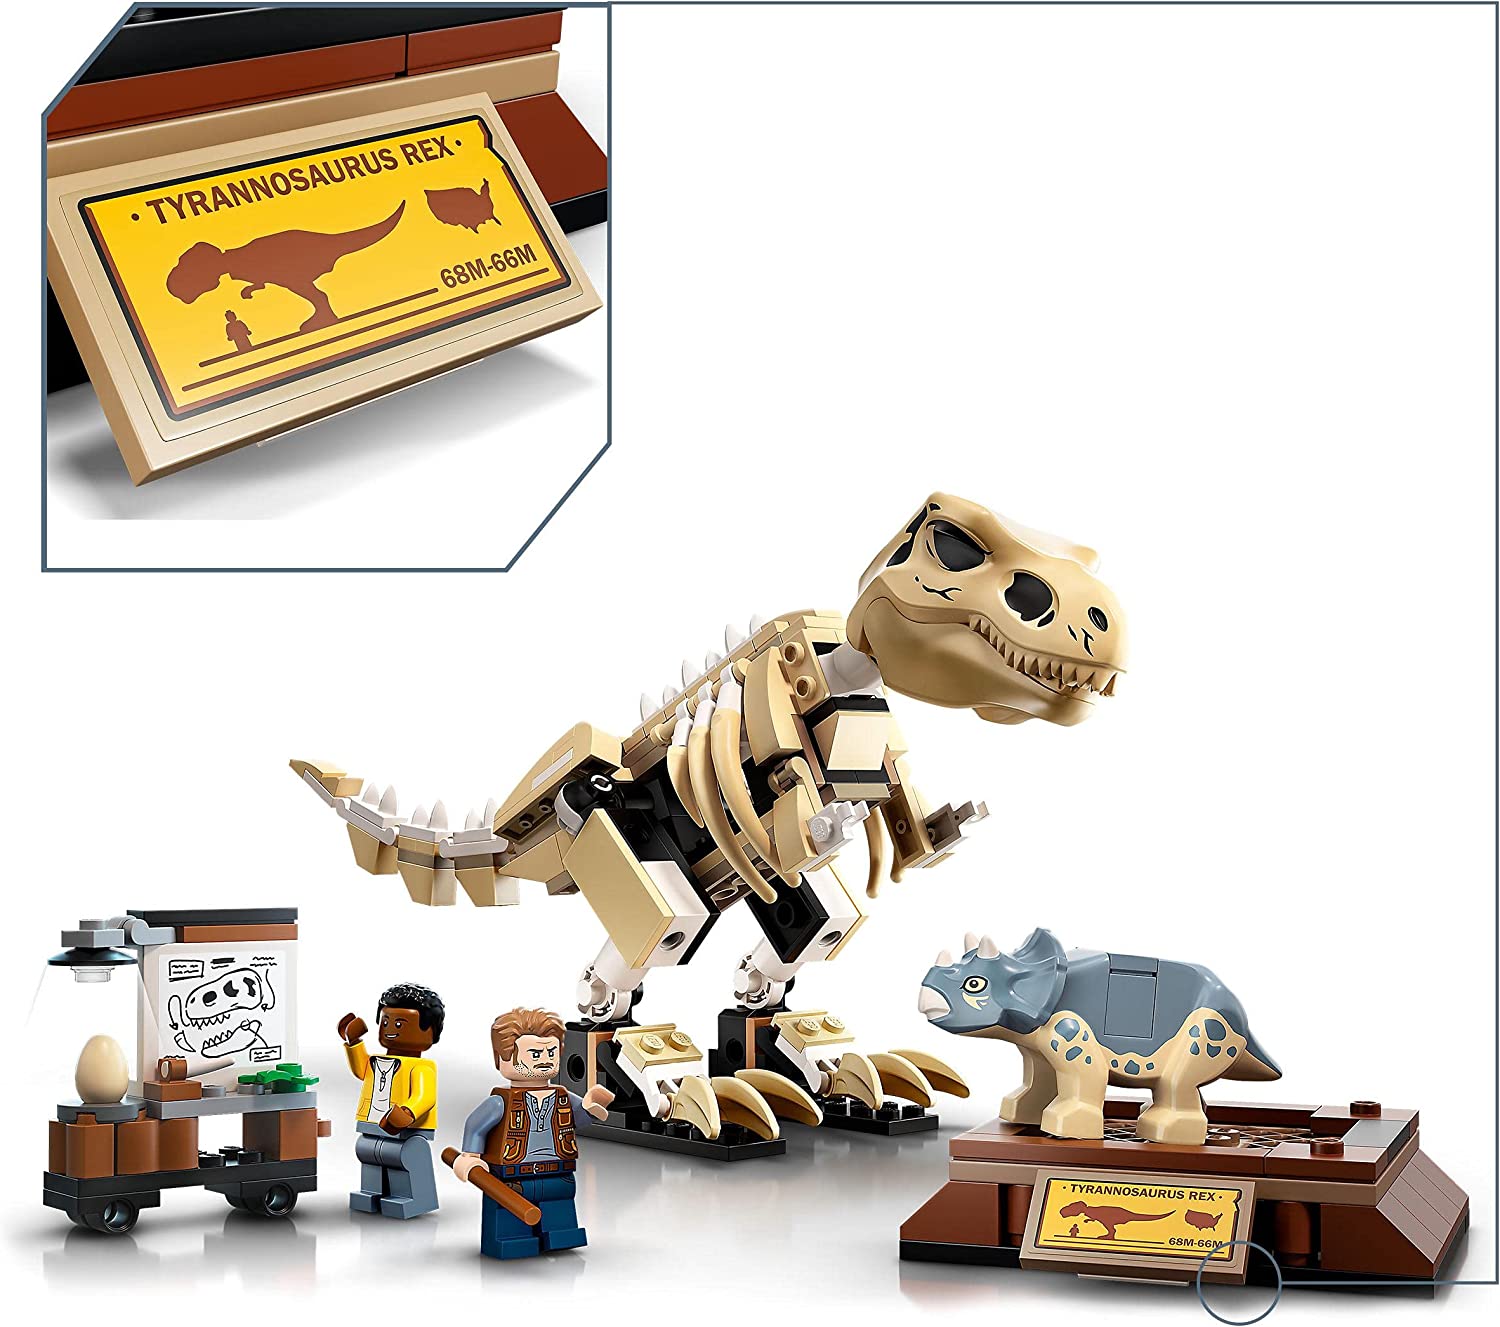 LEGO 76940 Jurassic World Fossilutställning med T Rex Utgrävningsleksak, Skelett